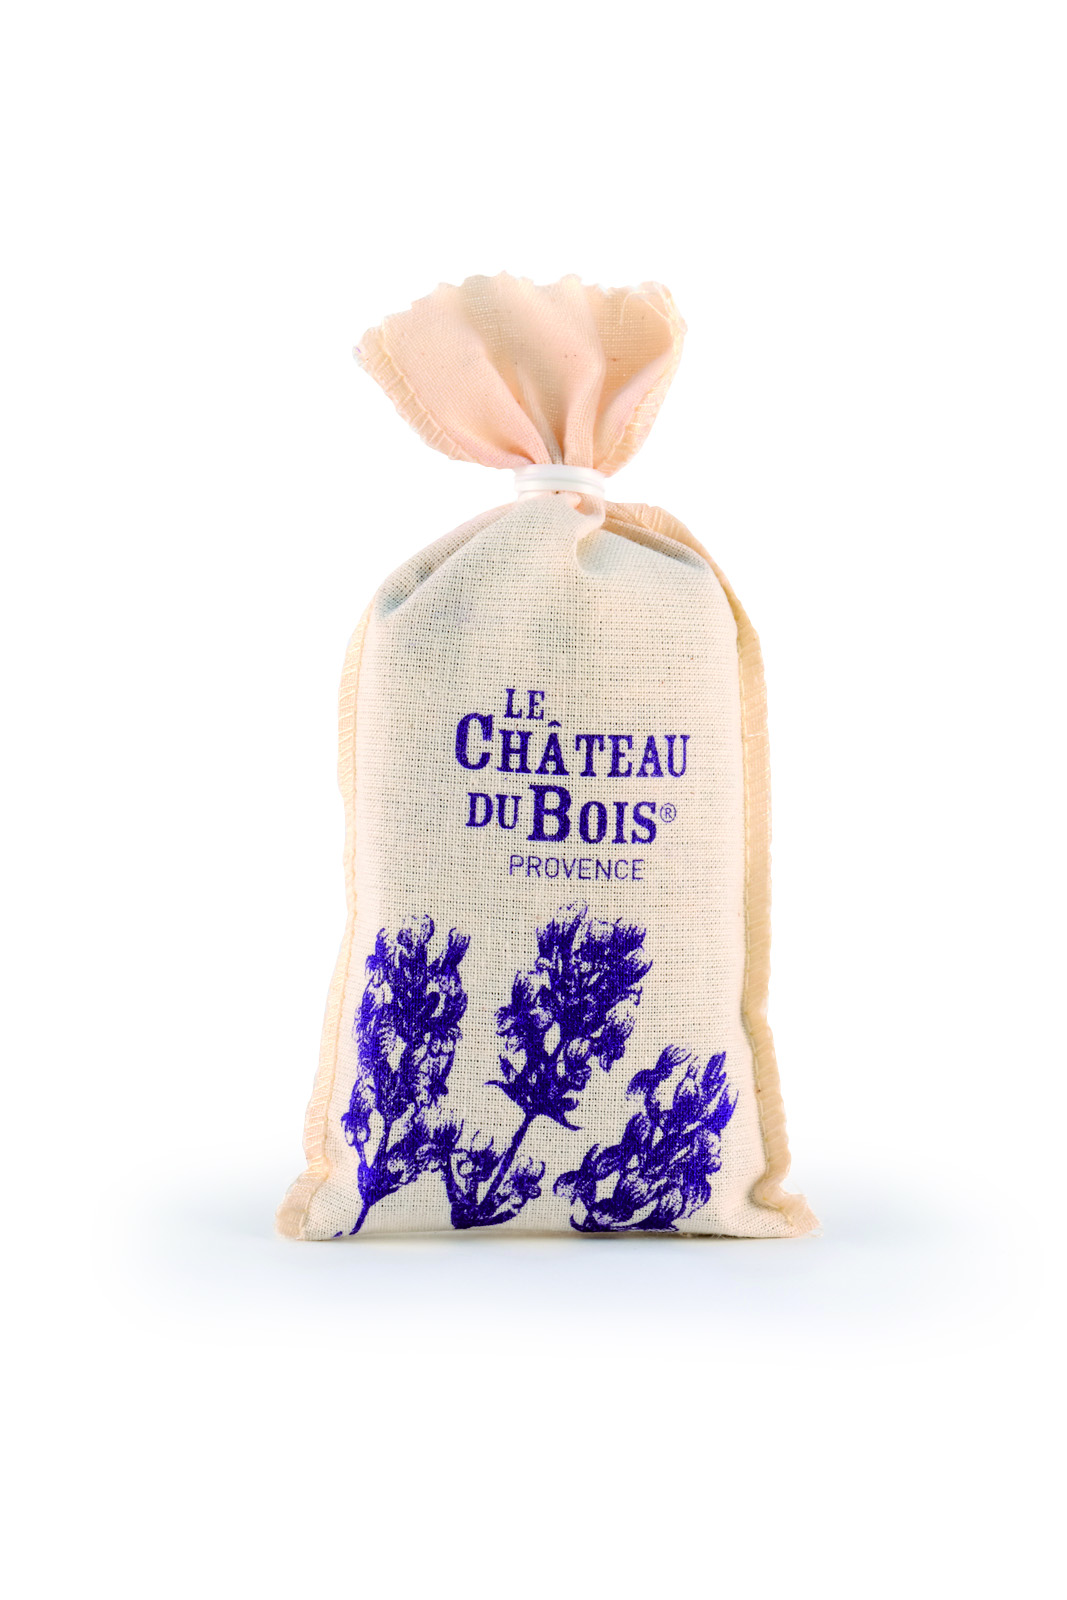 Sachet tradition fleurs de lavande coton 20g LE CHATEAU DU BOIS PROVENCE  5499 : Cosmétiques à la lavande fine de Provence - Le Château du Bois